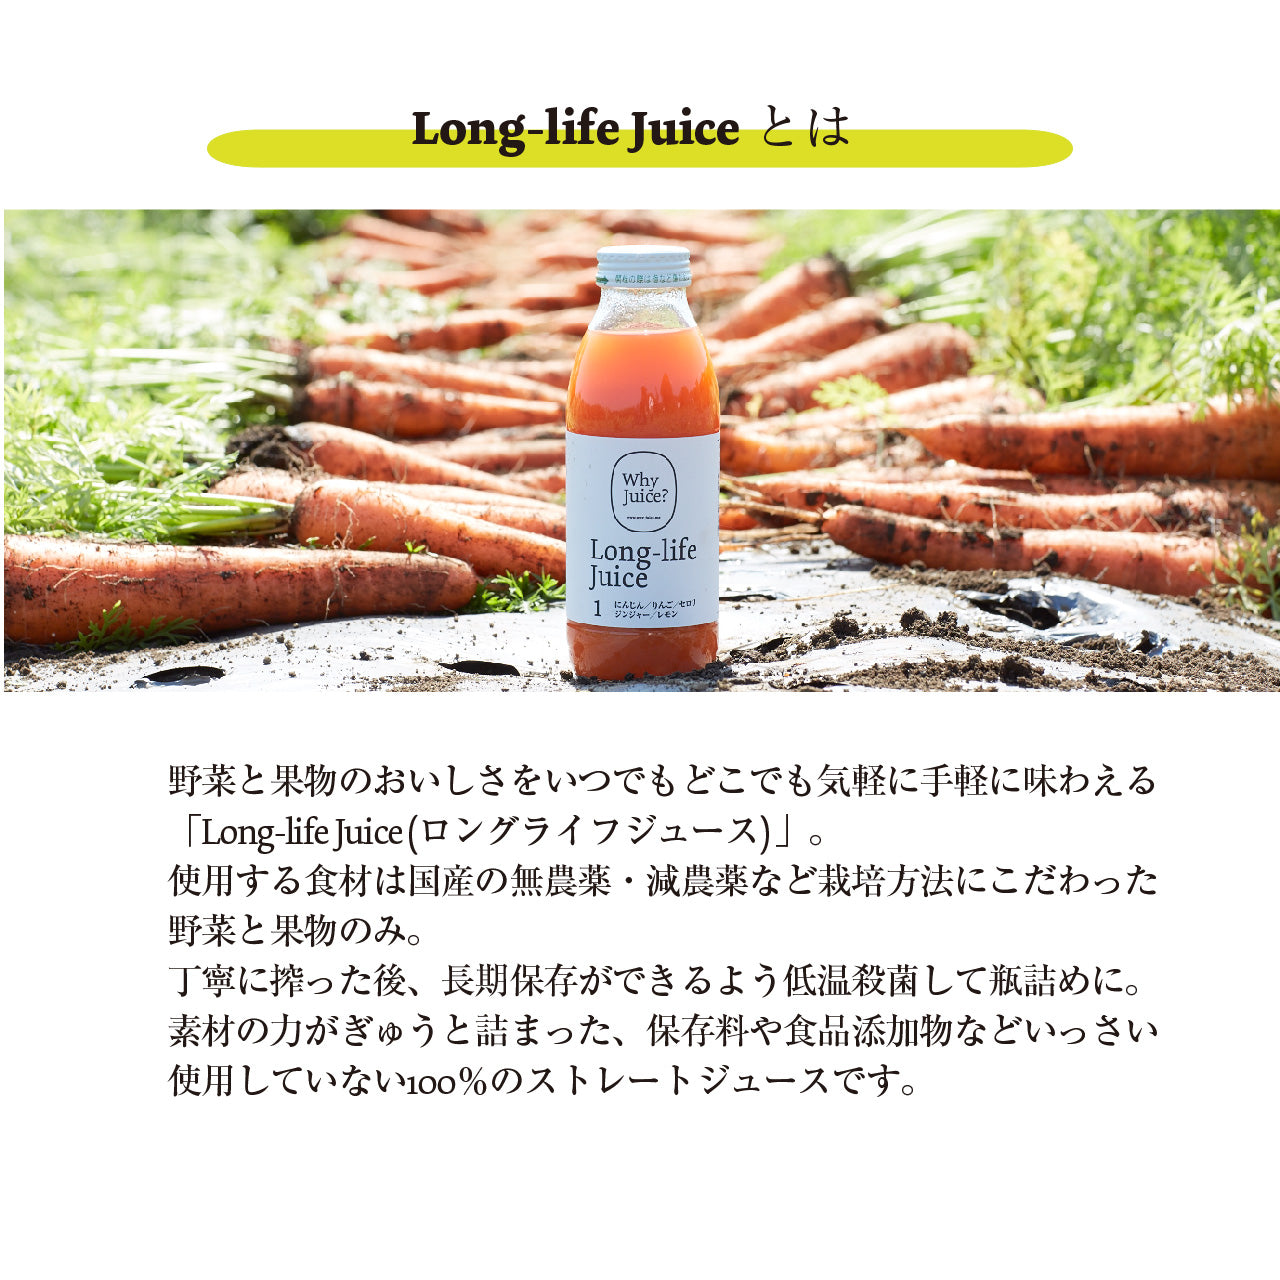 【無添加ジュース】Long-life Juice 12本ギフトボックス(定番3種類セット)